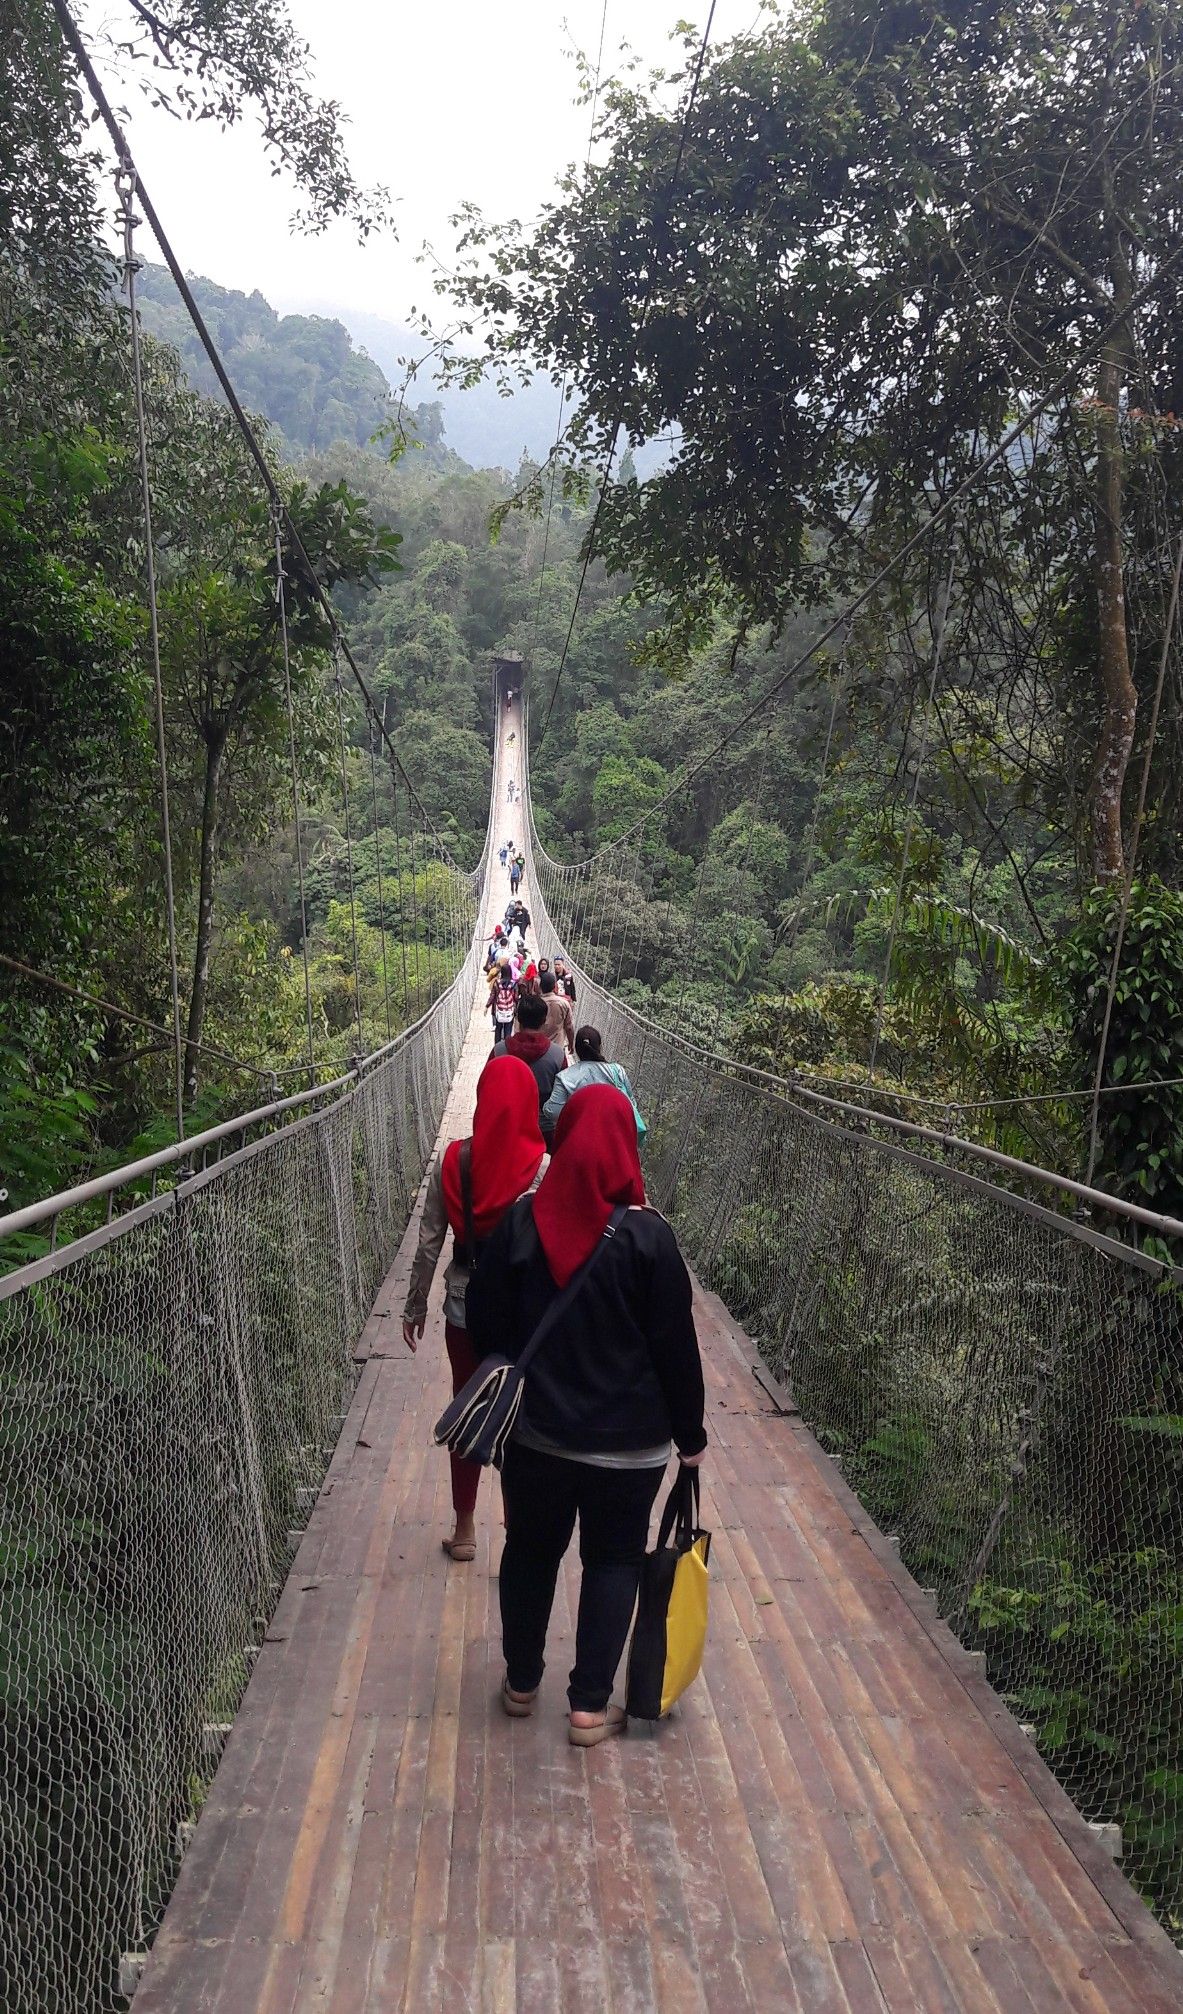 Ini adalah jembatan gantung situ gunung.jembatan gantung terpanjang di Indonesia